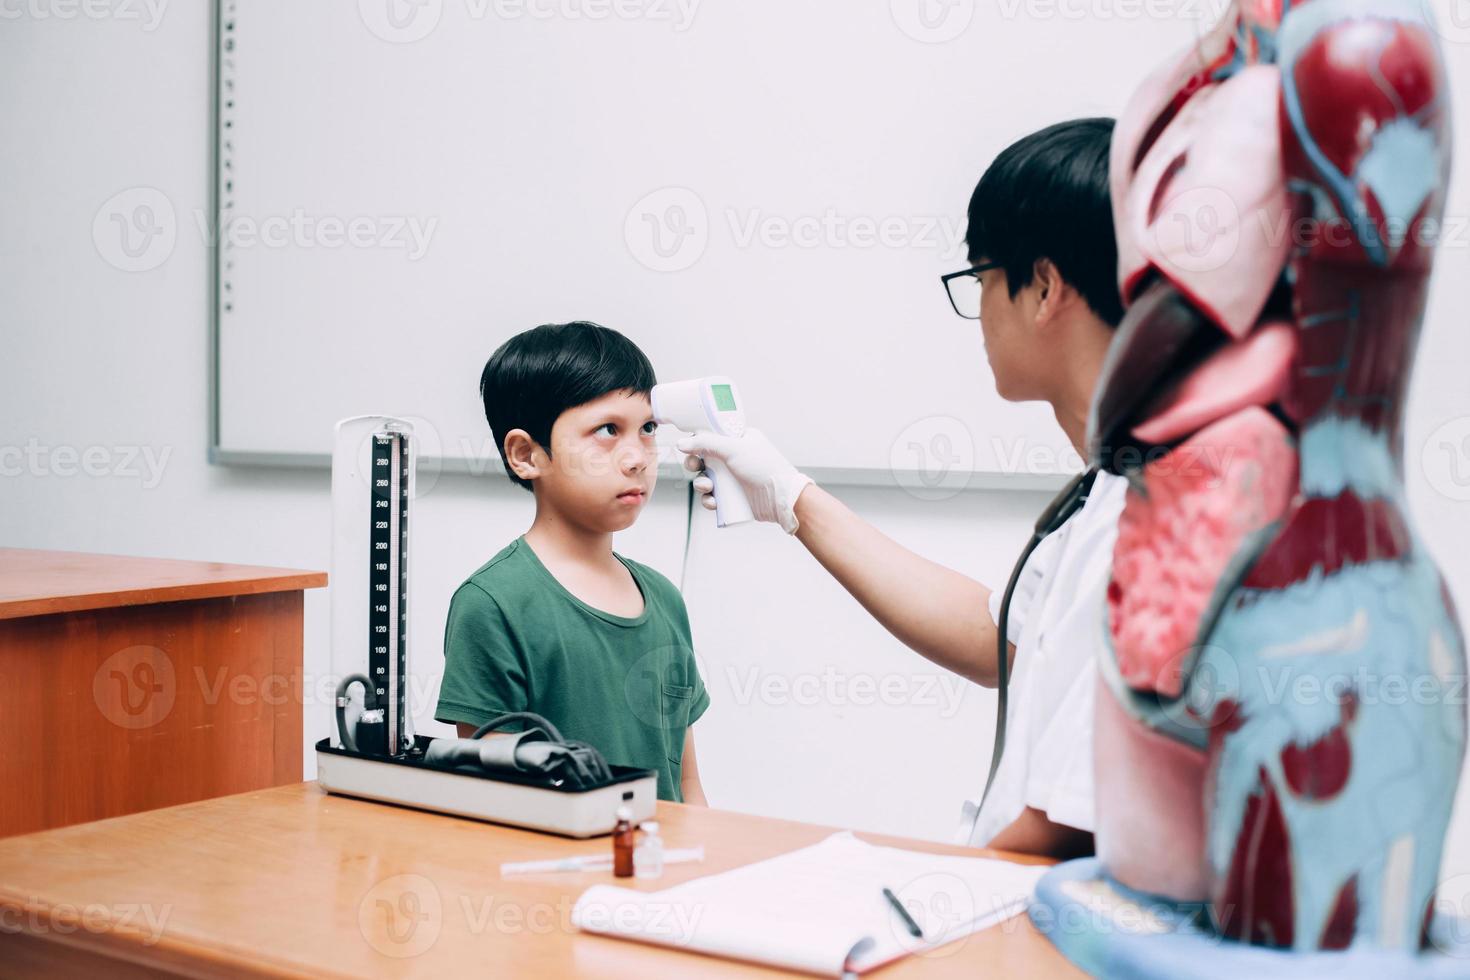 médico verificar a temperatura corporal do paciente menino usando arma termômetro infravermelho na testa foto